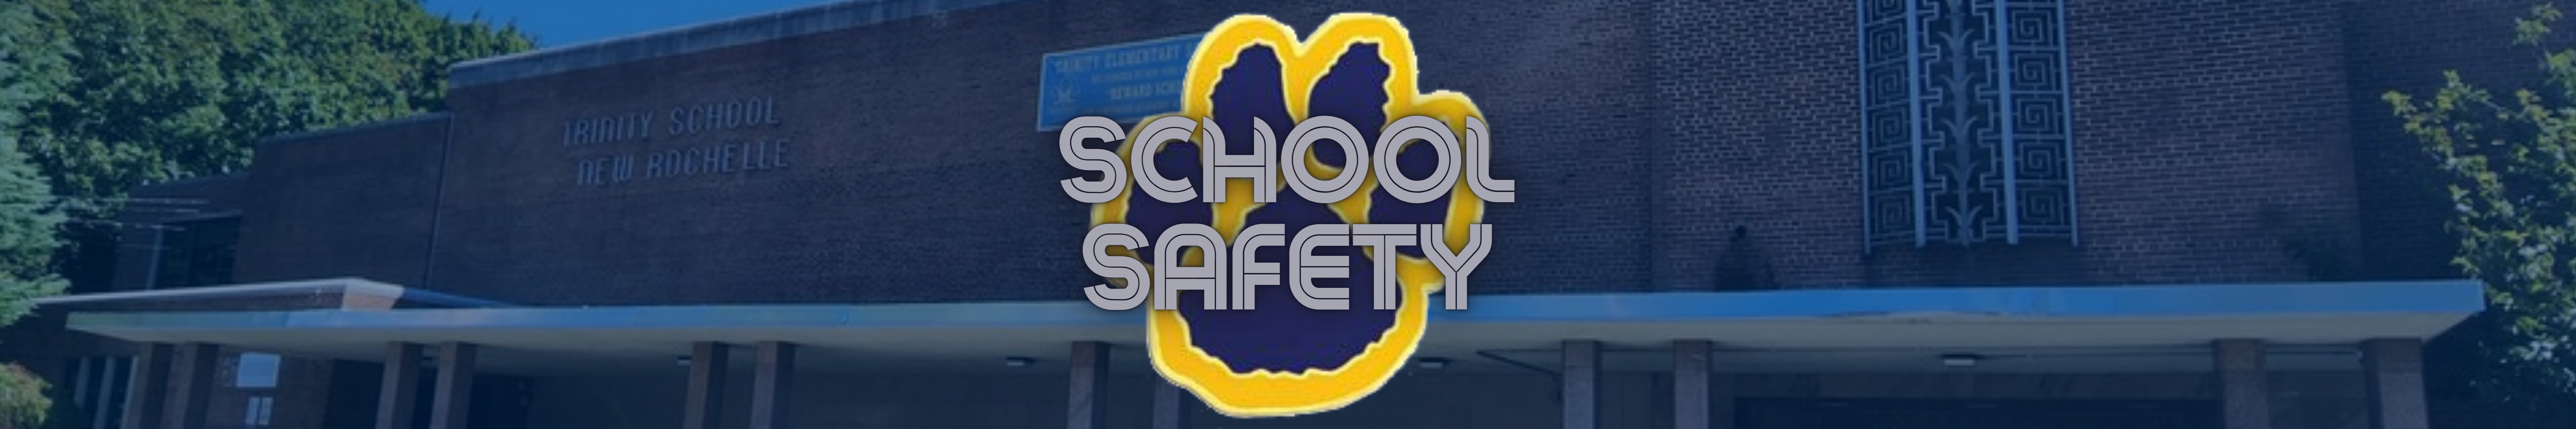 School Safety banner